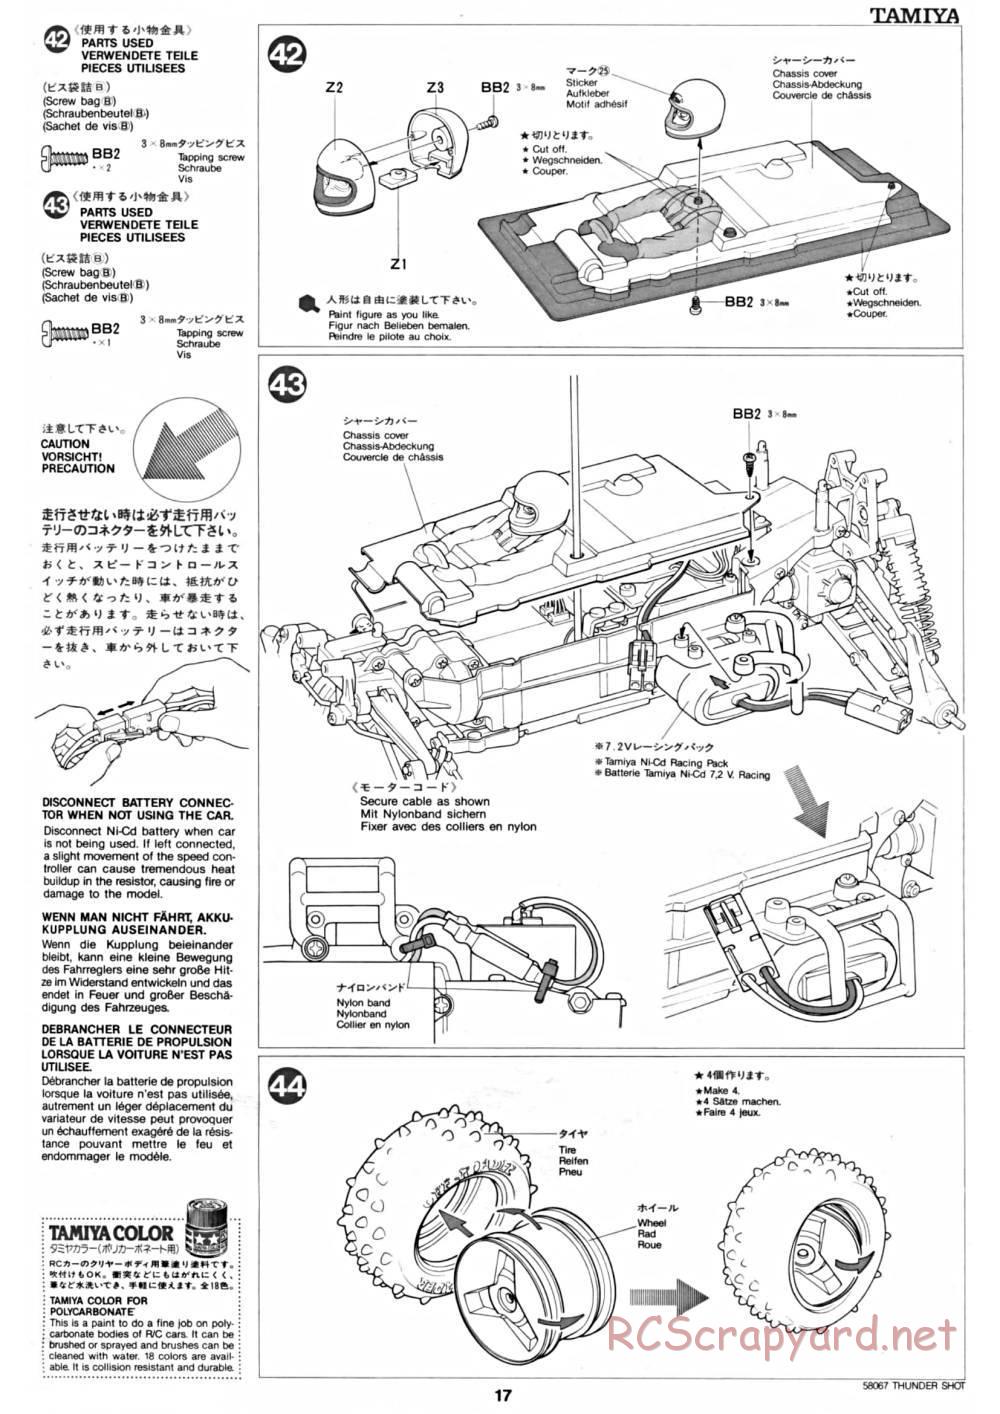 Tamiya - Thunder Shot - 58067 - Manual - Page 17